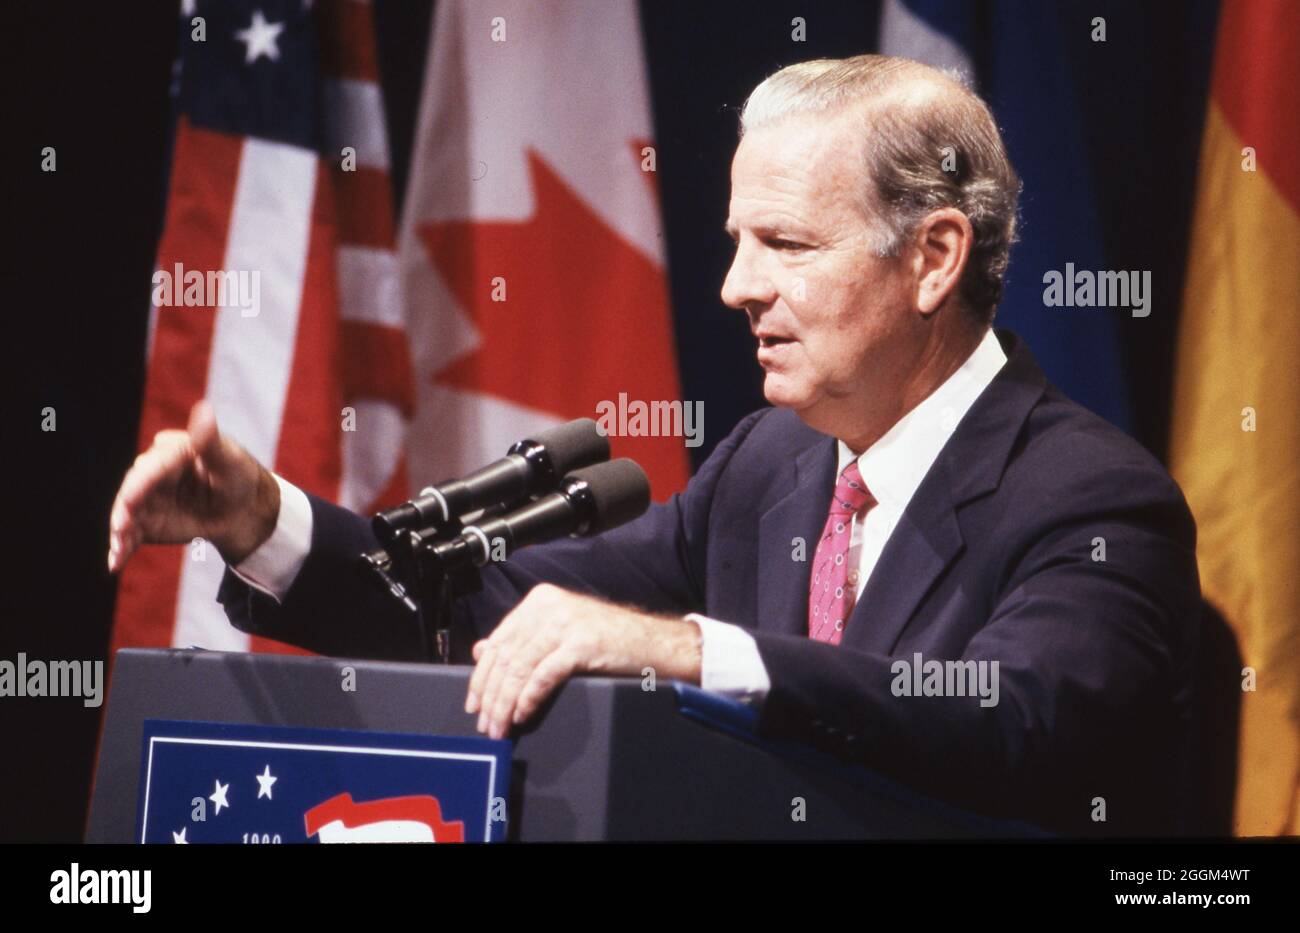 Houston Texas USA, Juli 1990: Der US-Außenminister James Baker spricht beim Houston Economic Summit of Industrialized Nations vor führenden Politikern der Welt. Präsident George H. W. Bush moderierte die Veranstaltung, die auch als G7-Wirtschaftsgipfel bezeichnet wird. ©Bob Daemmrich Stockfoto